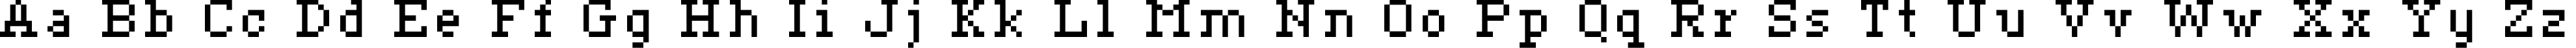 Пример написания английского алфавита шрифтом ceriph 07_56